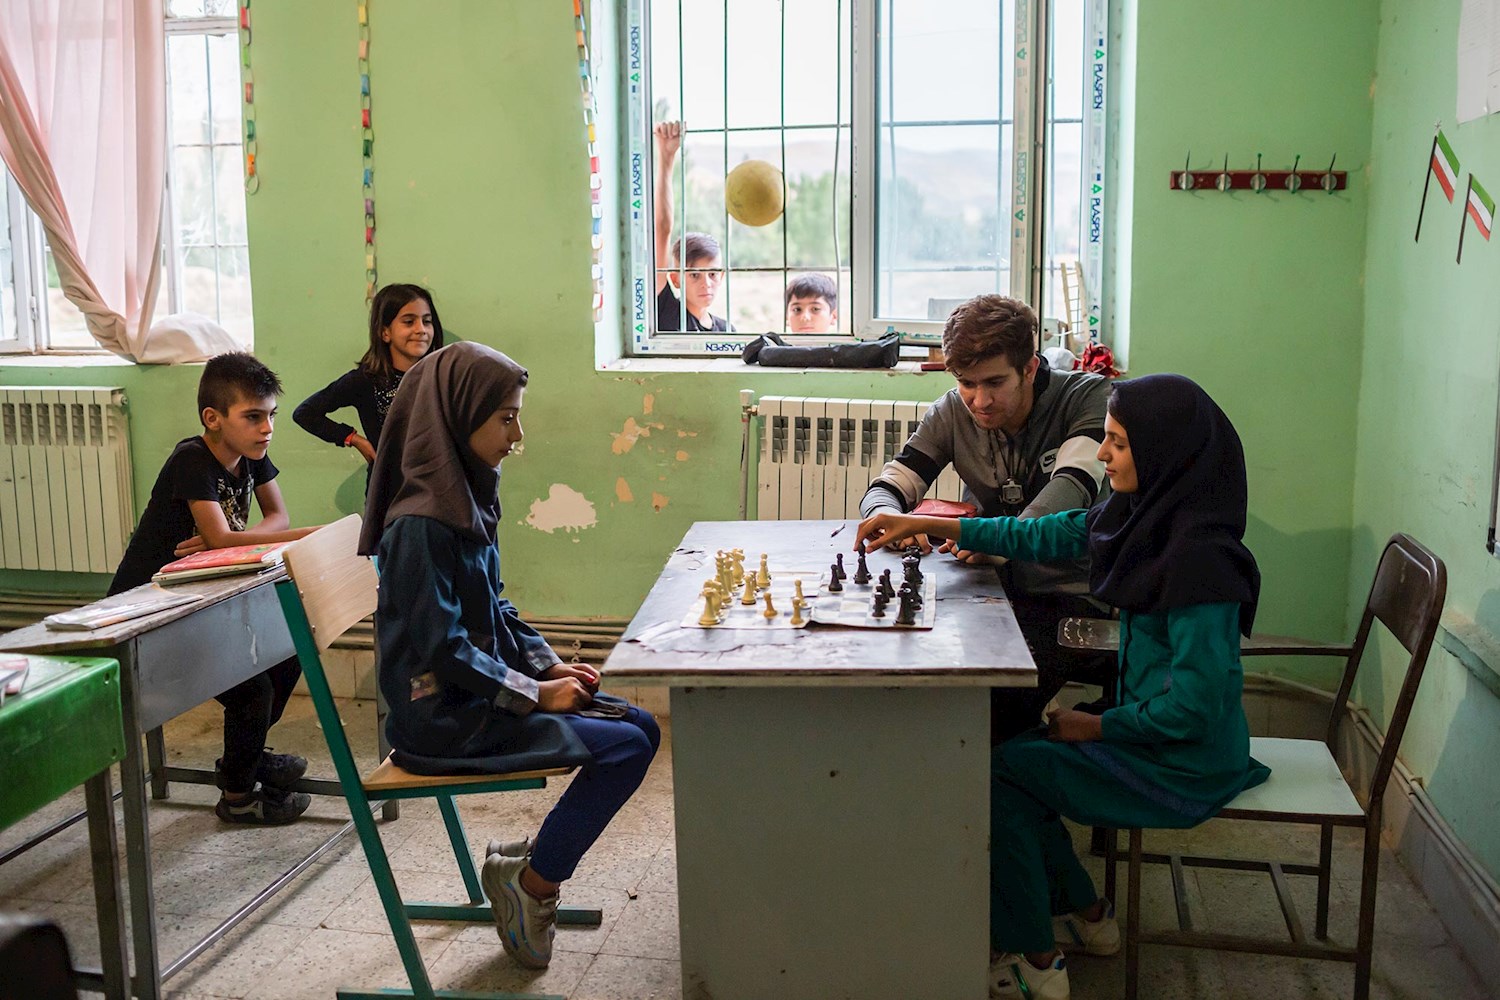 میثم معلم تربیت بدنی مدرسه شمس در روستای پیک می‌باشد. او بدلیل محدودیت‌هایی در روستا، برای دانش آموزان دختر، تنها شطرنج و طناب زنی میتواند آموزش دهد.